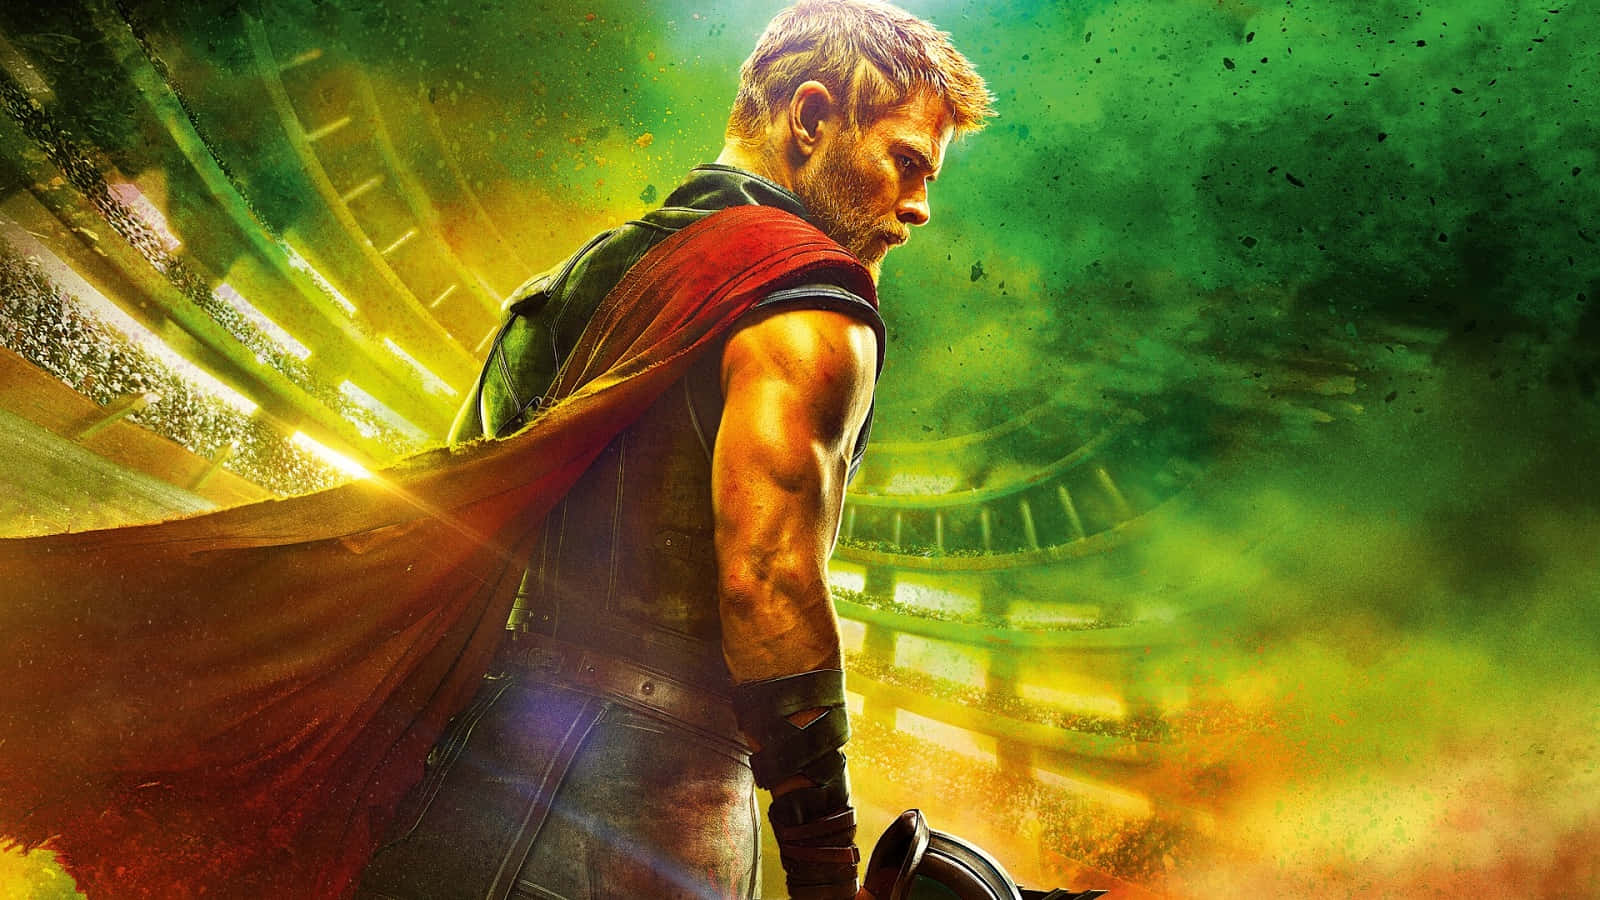 Chris Hemsworth as Thor in Marvel's Thor Ragnarok Wallpaper